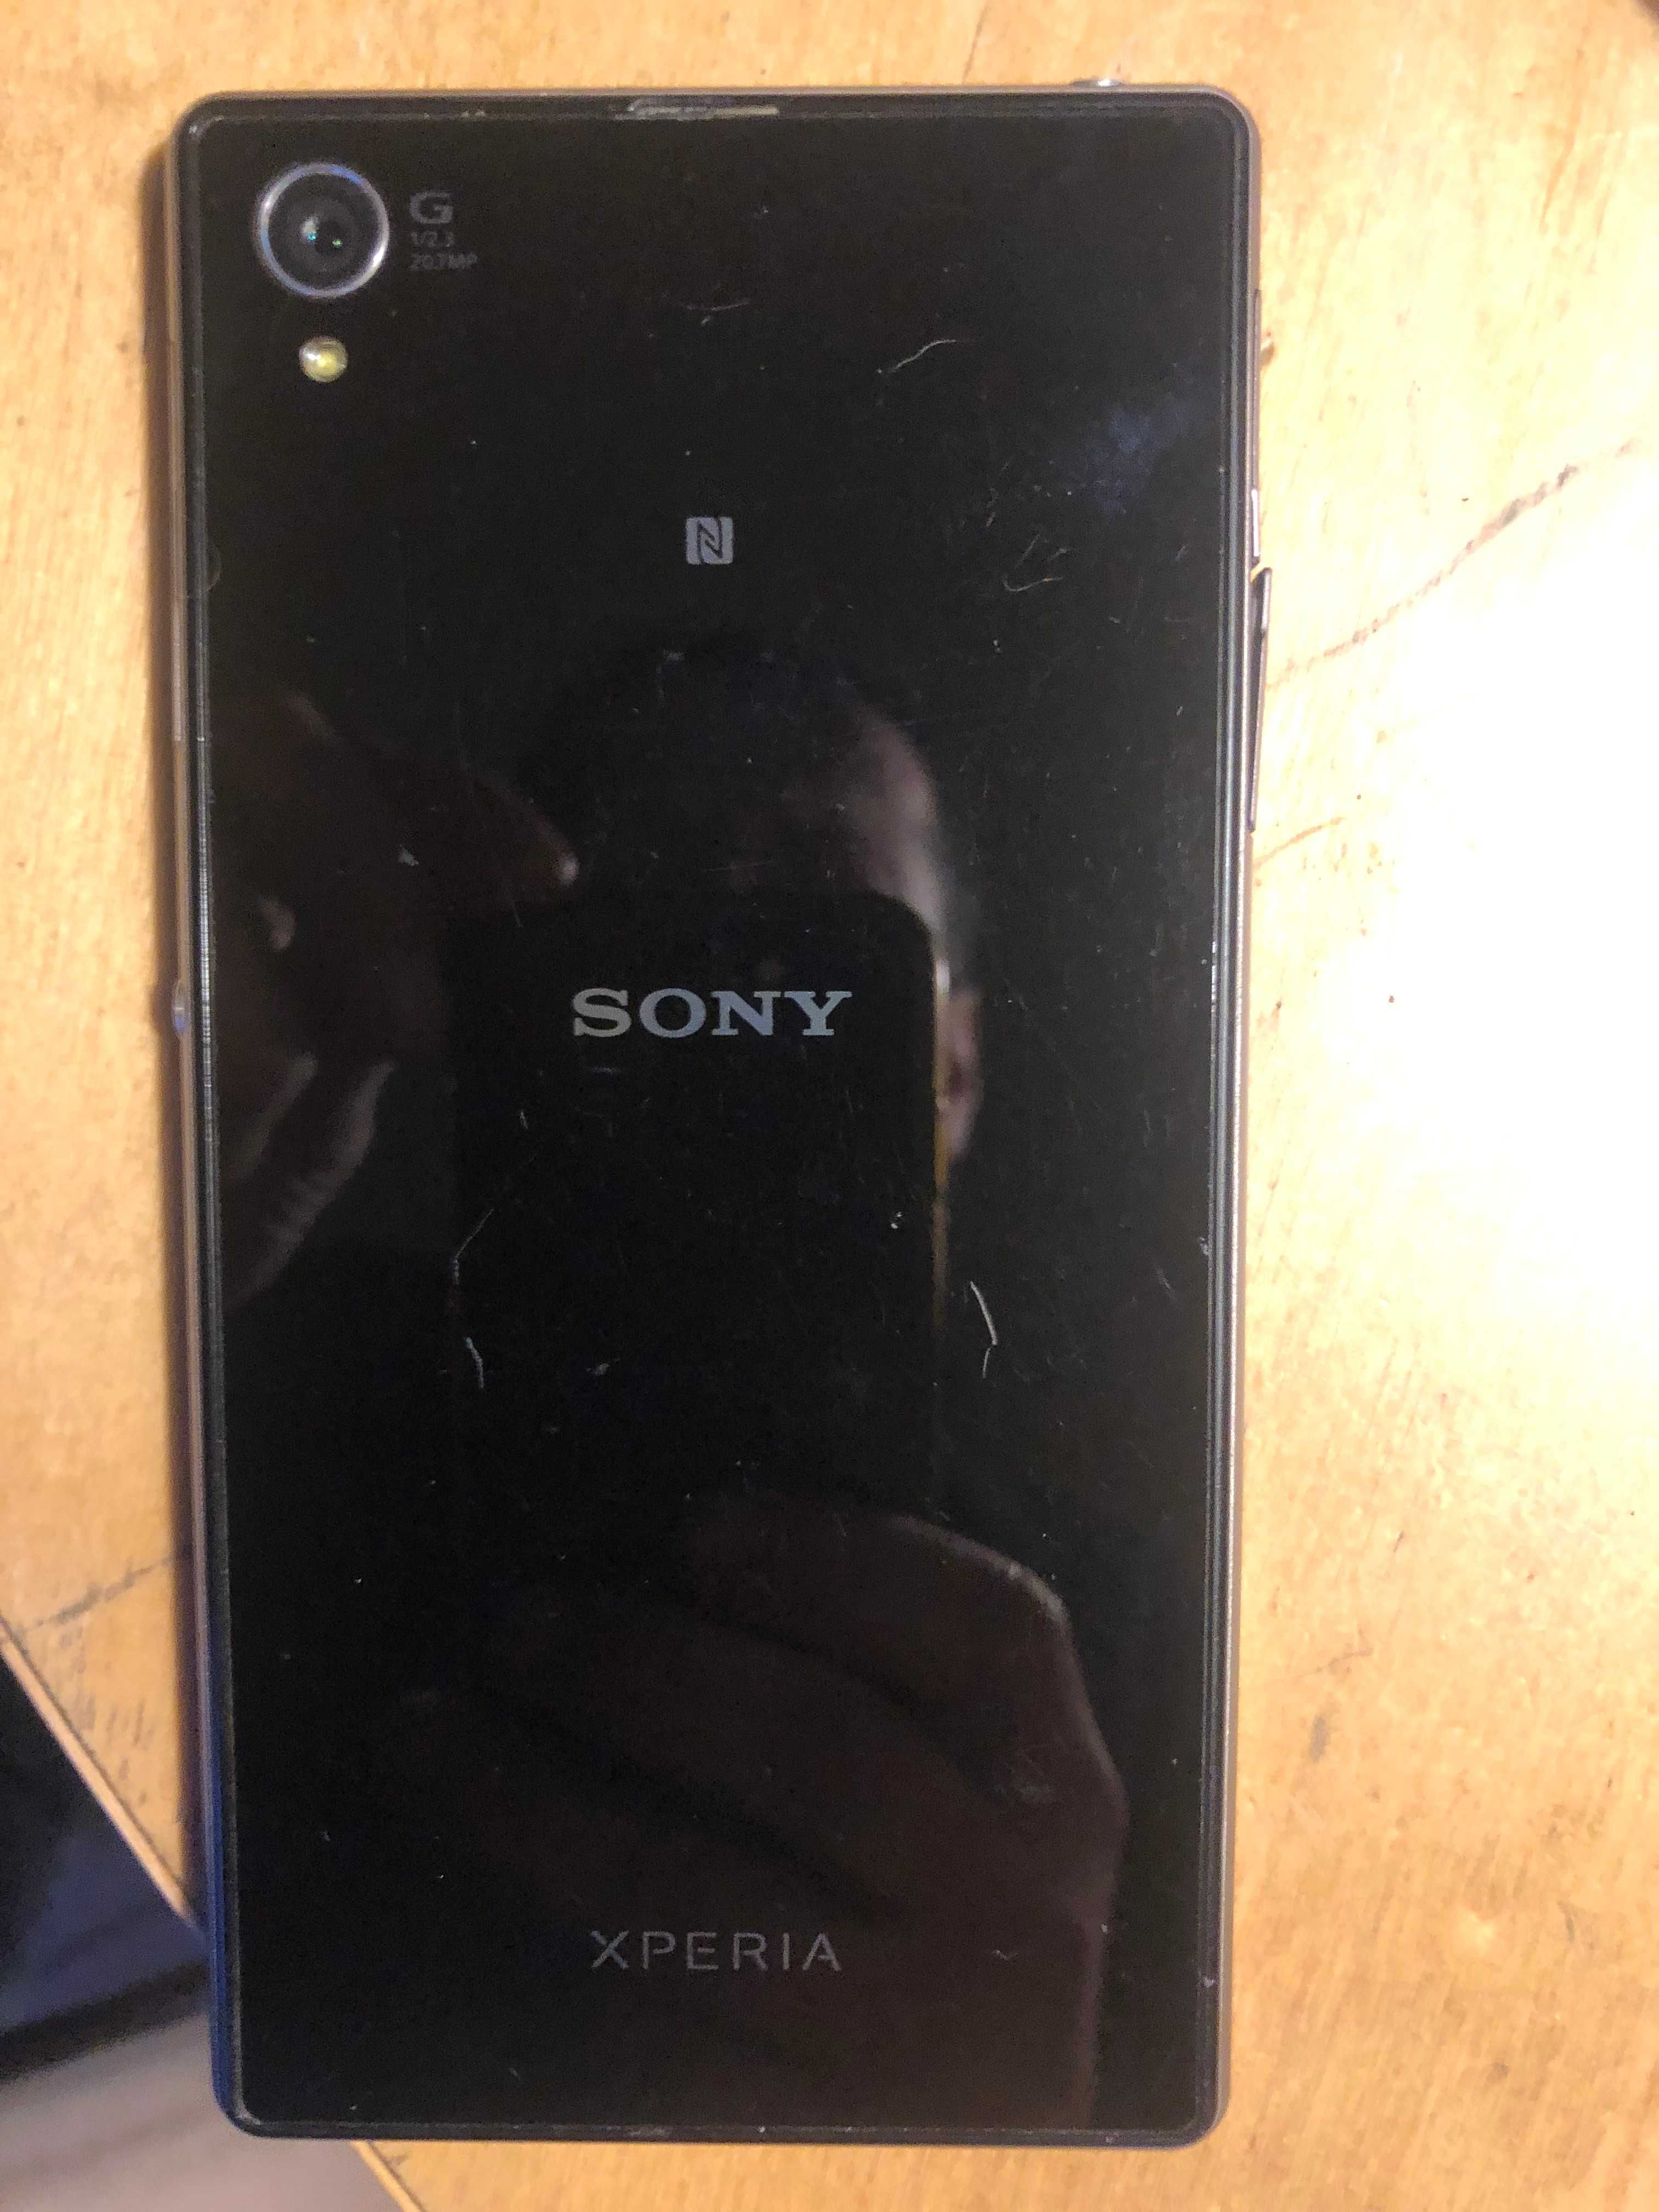 Sony xperia smartfon